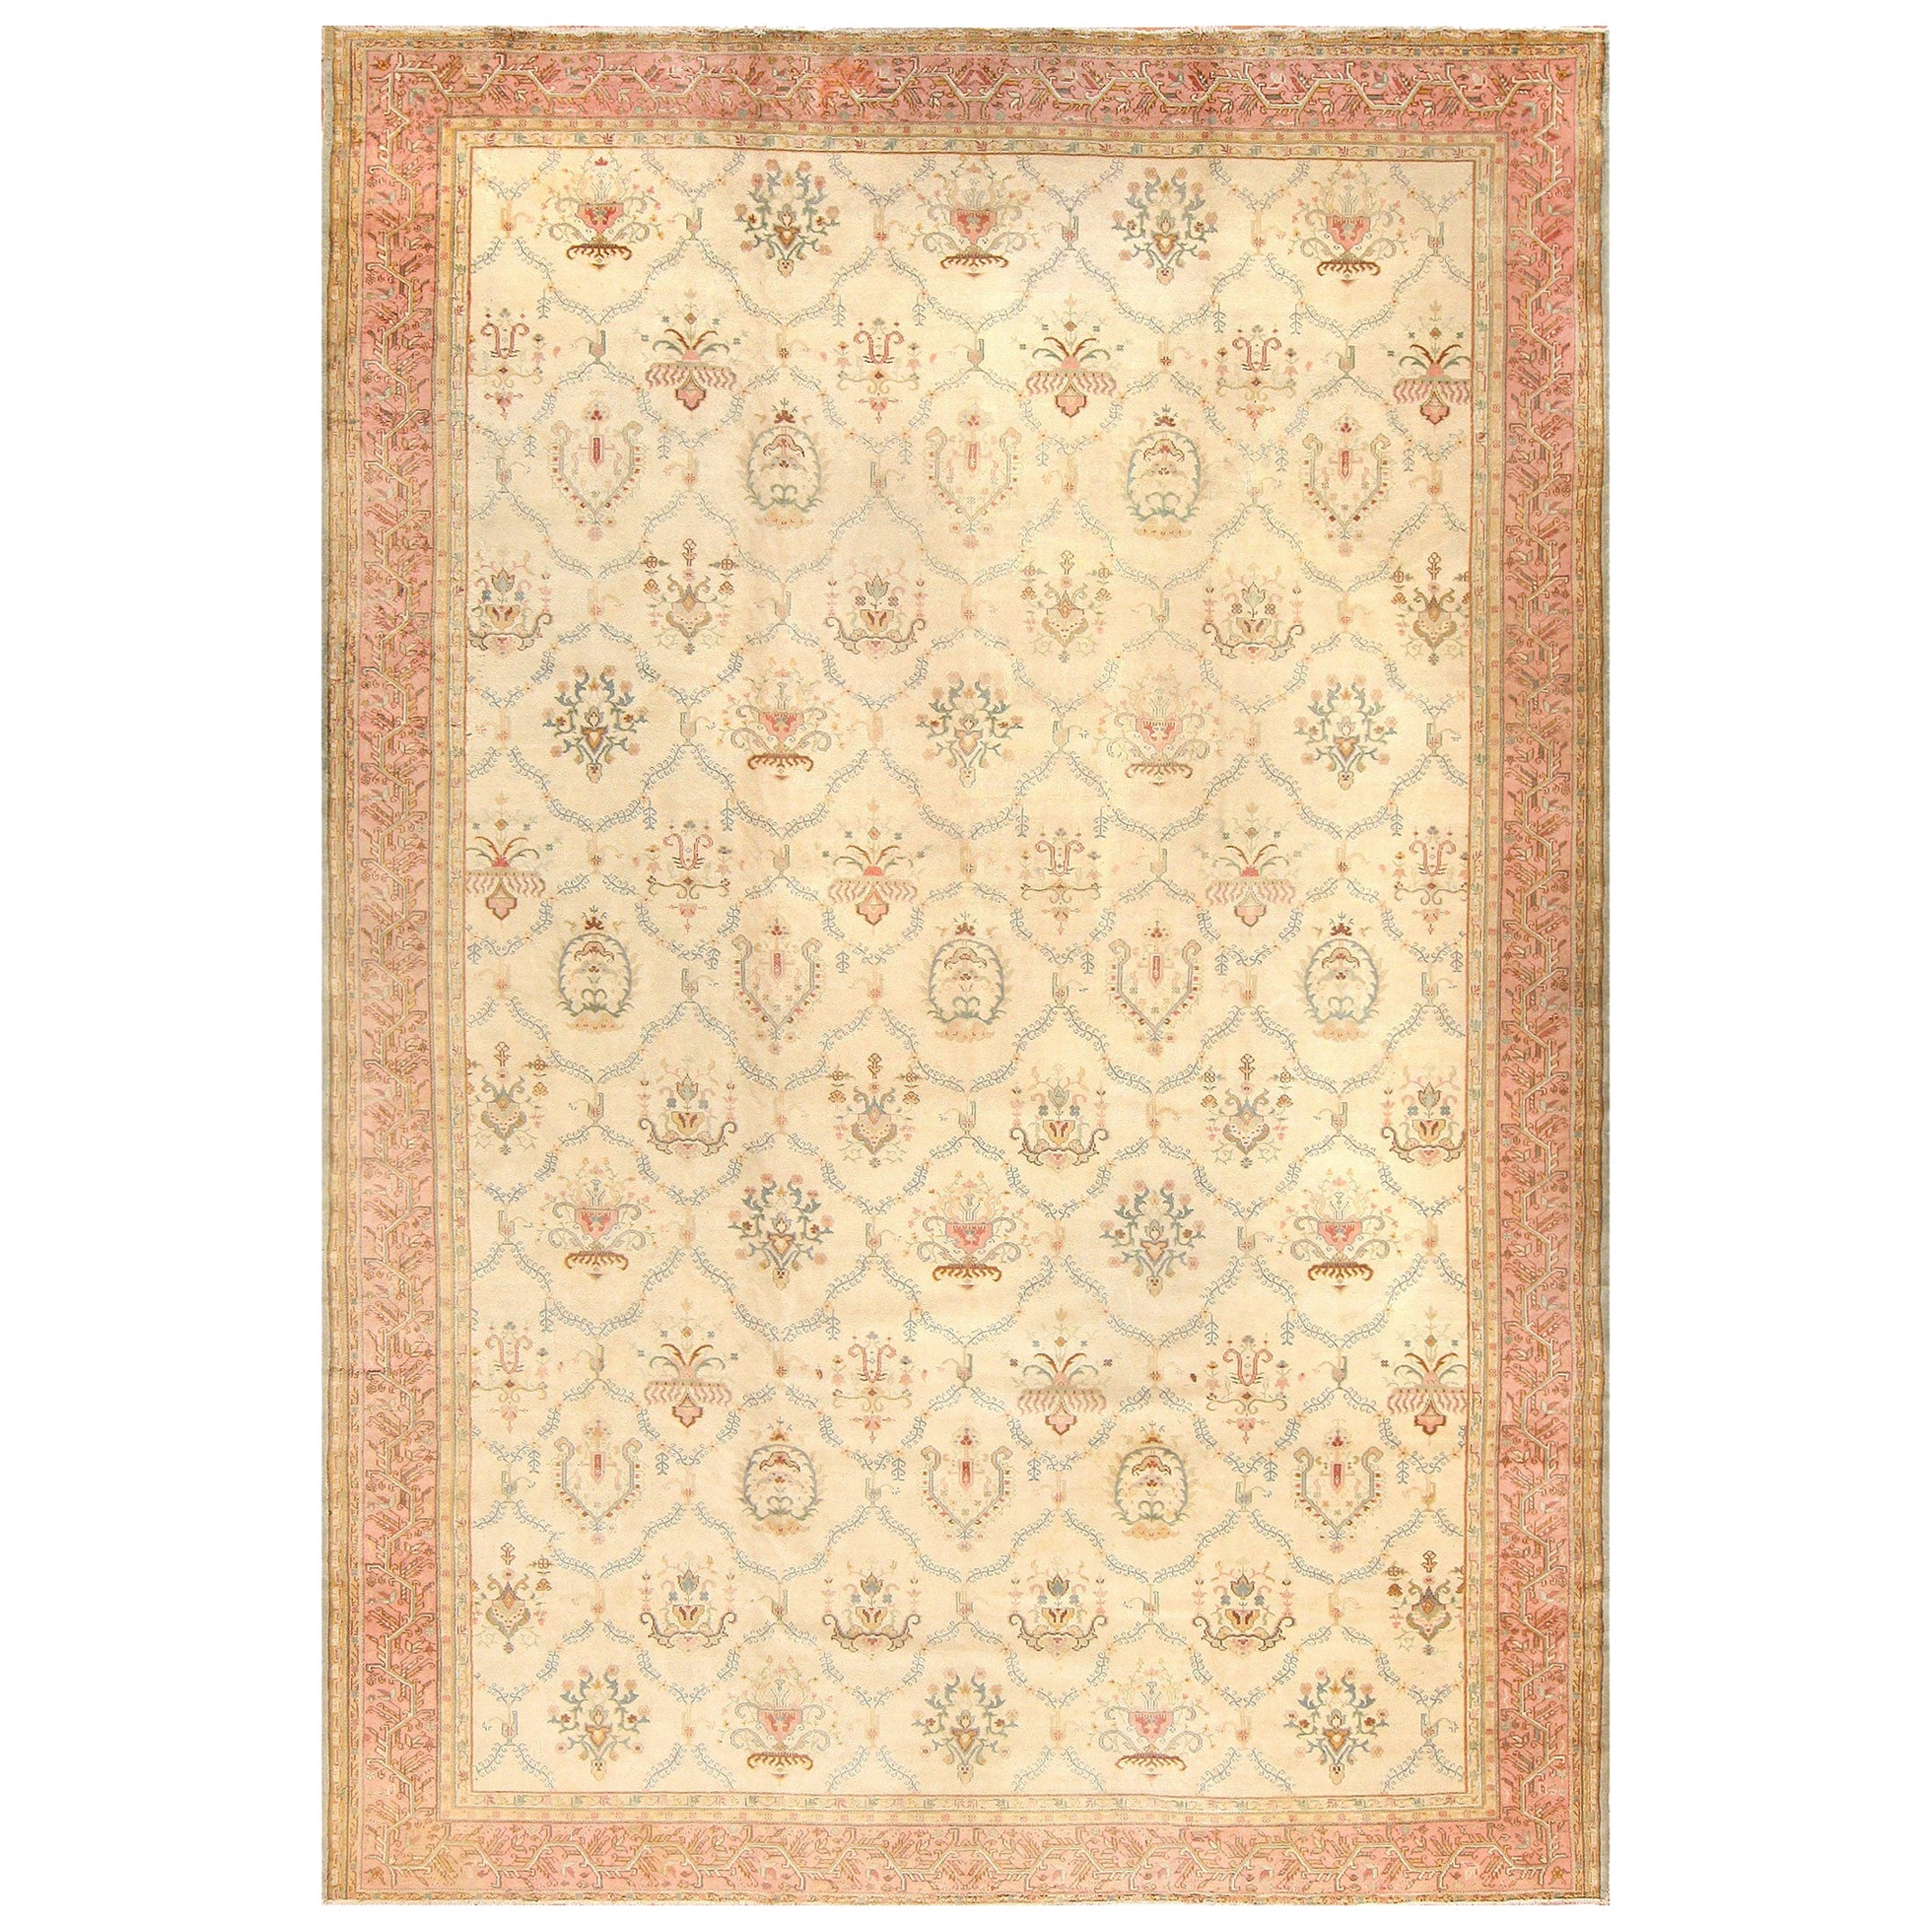 Vintage Turkish Sivas Carpet. Size: 11 ft 9 in x 17 ft 3 in